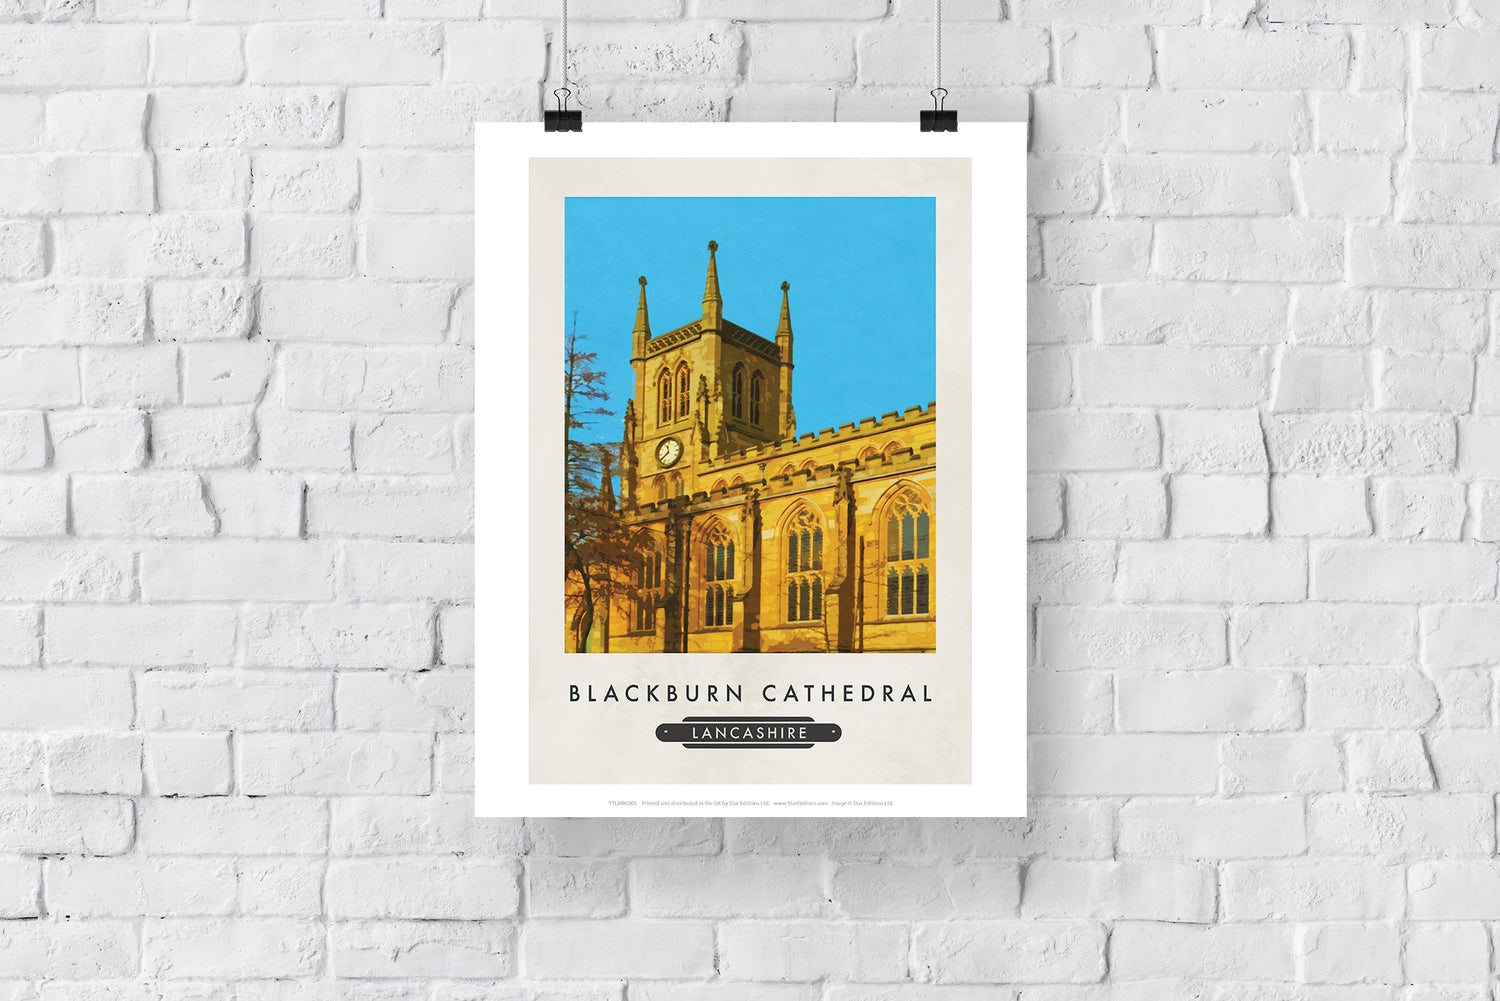 Blackburn Cathedral - Art Print